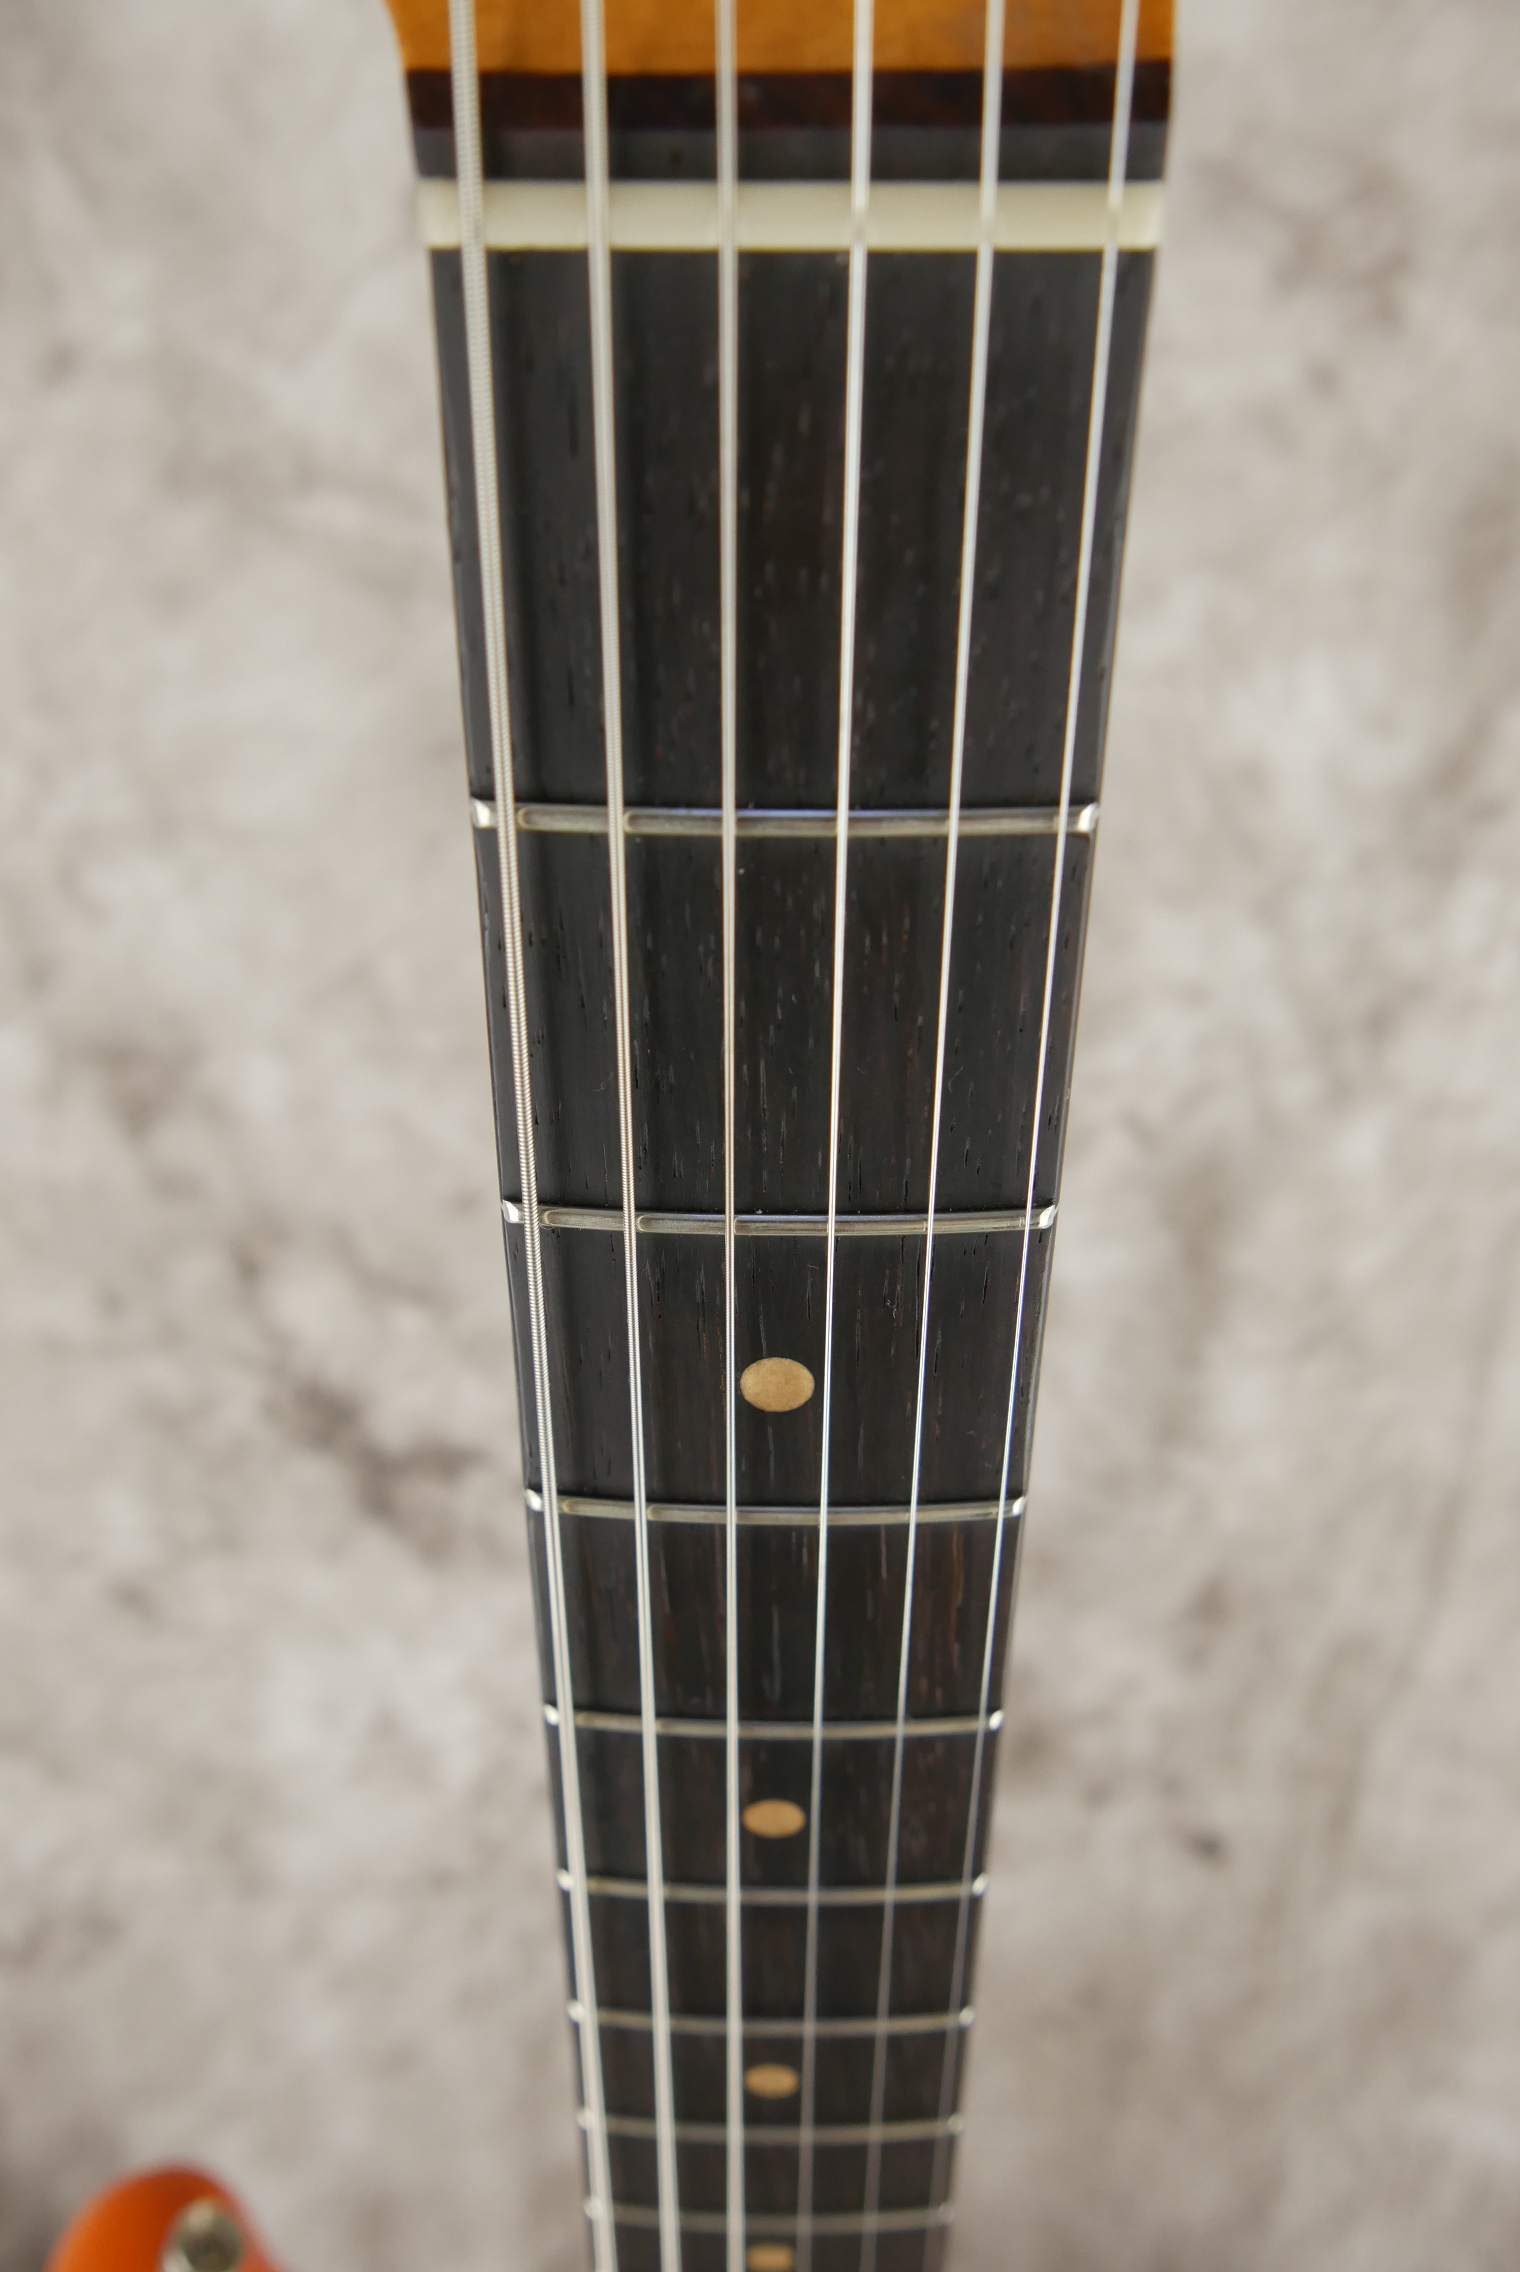 Fender-Stratocaster-1964-orange-refinish-011.JPG